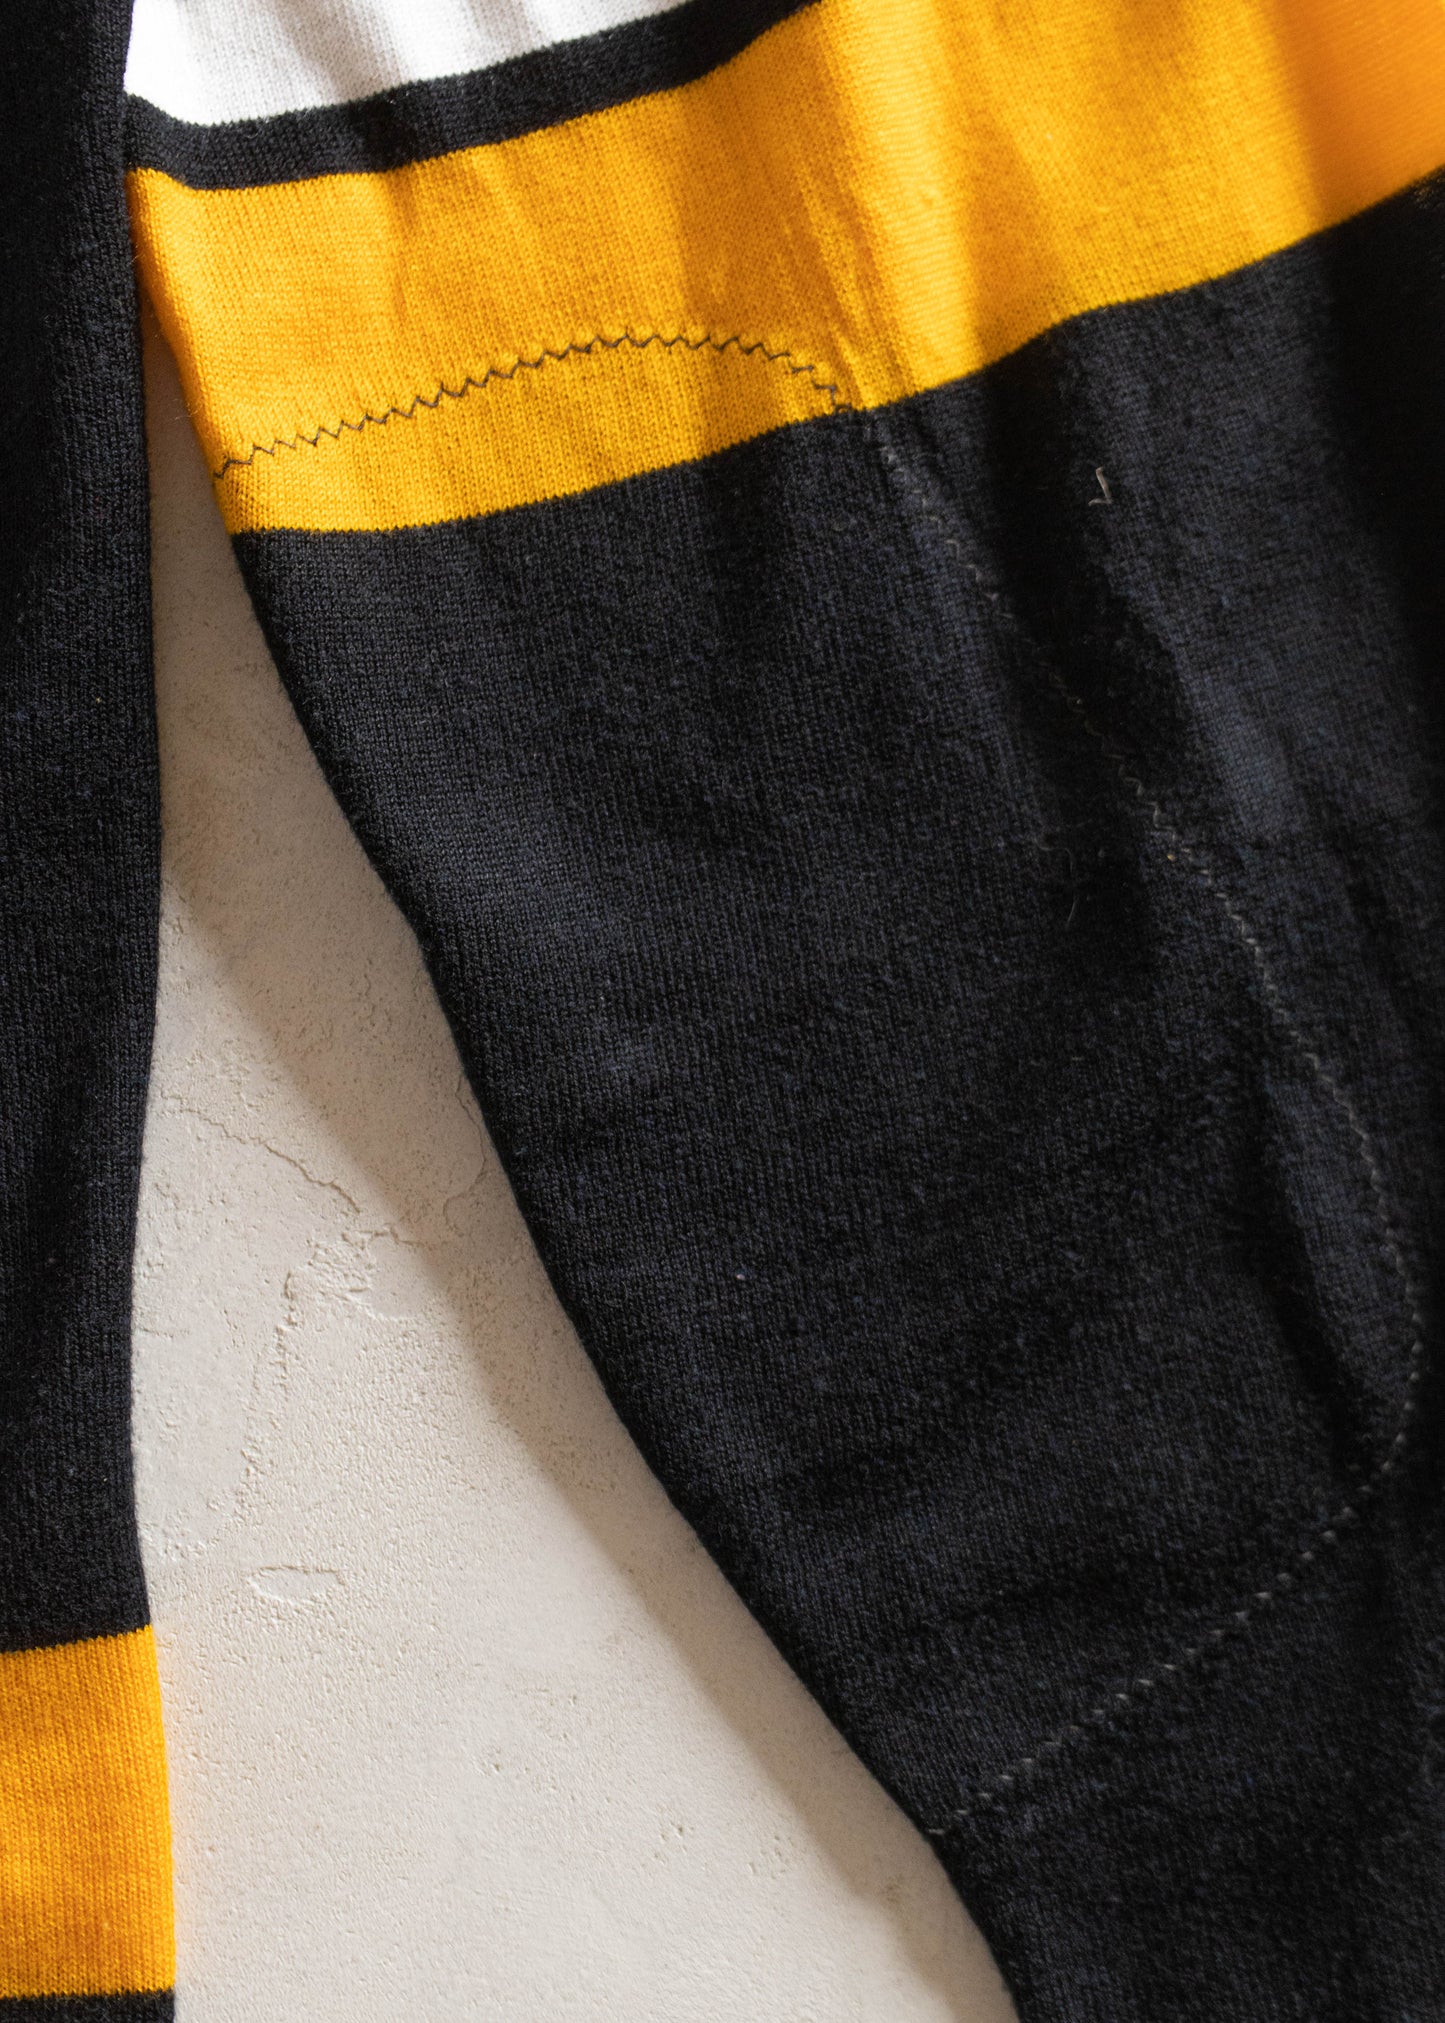 1980s Coane Long Sleeve Sport Jersey Size L/XL